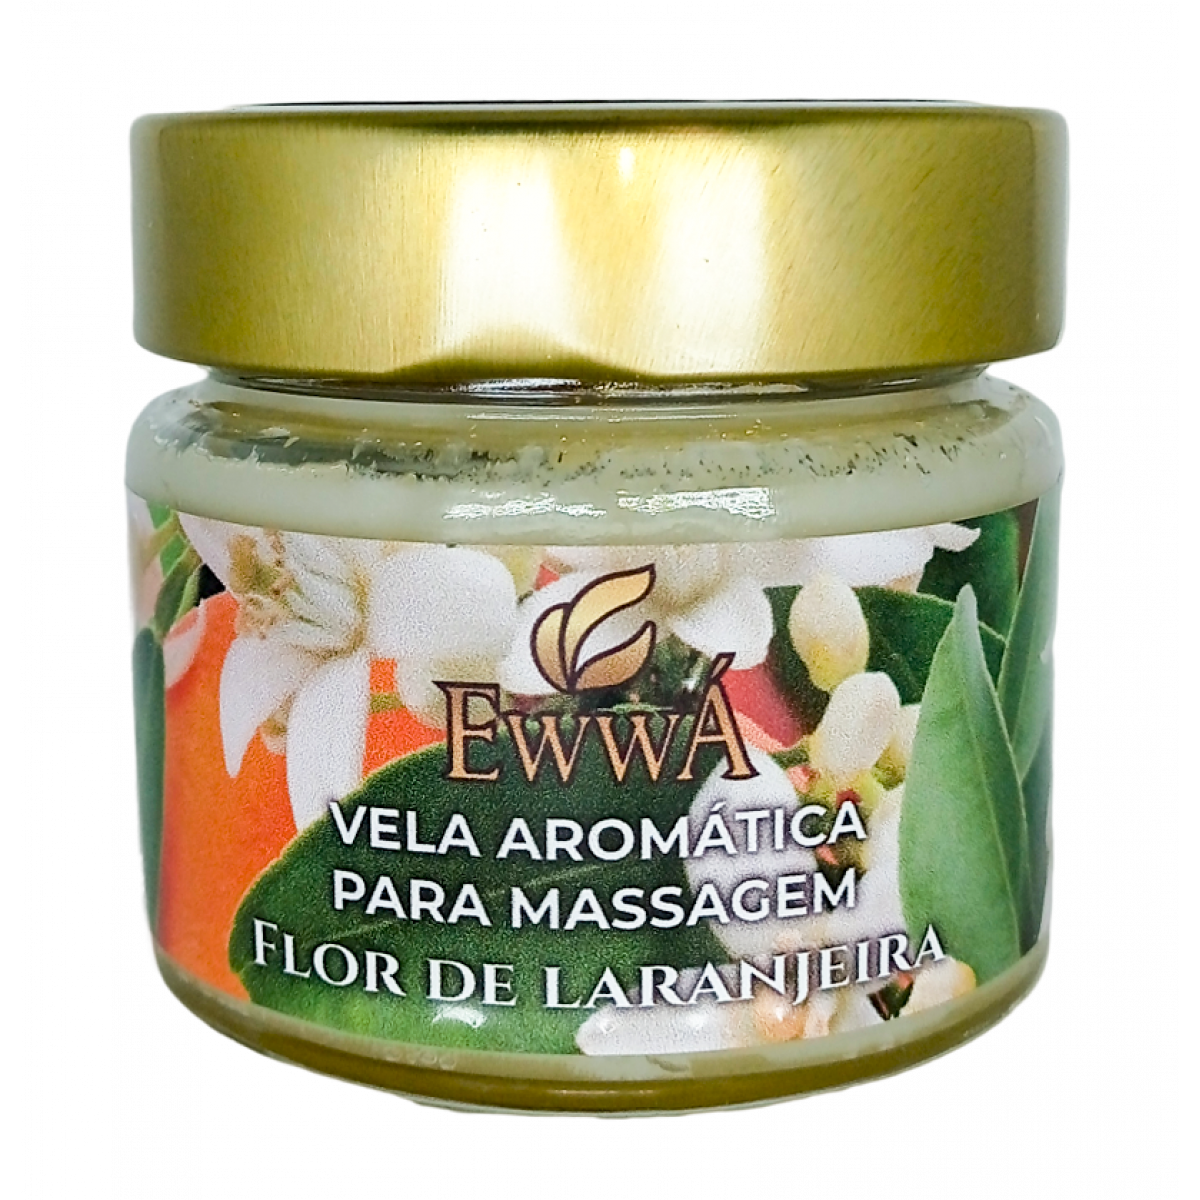 Vela Aromática para Massagem - Flor de Laranjeira 150g